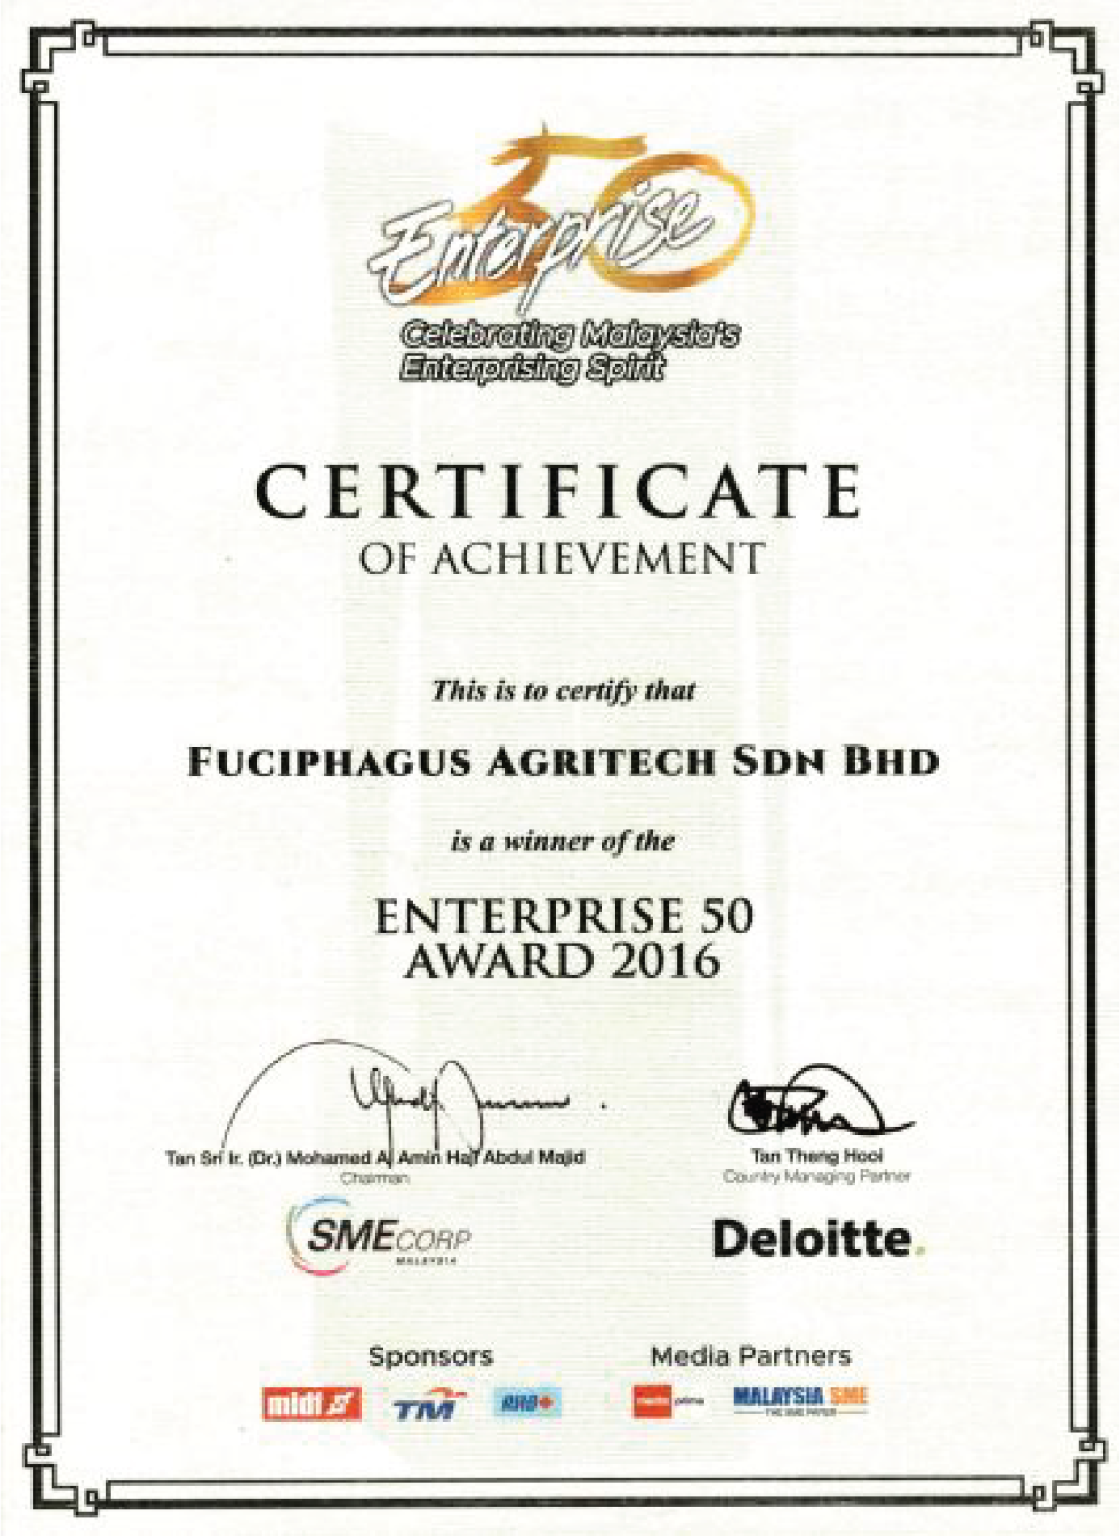 Enterprise 50 Award 2016